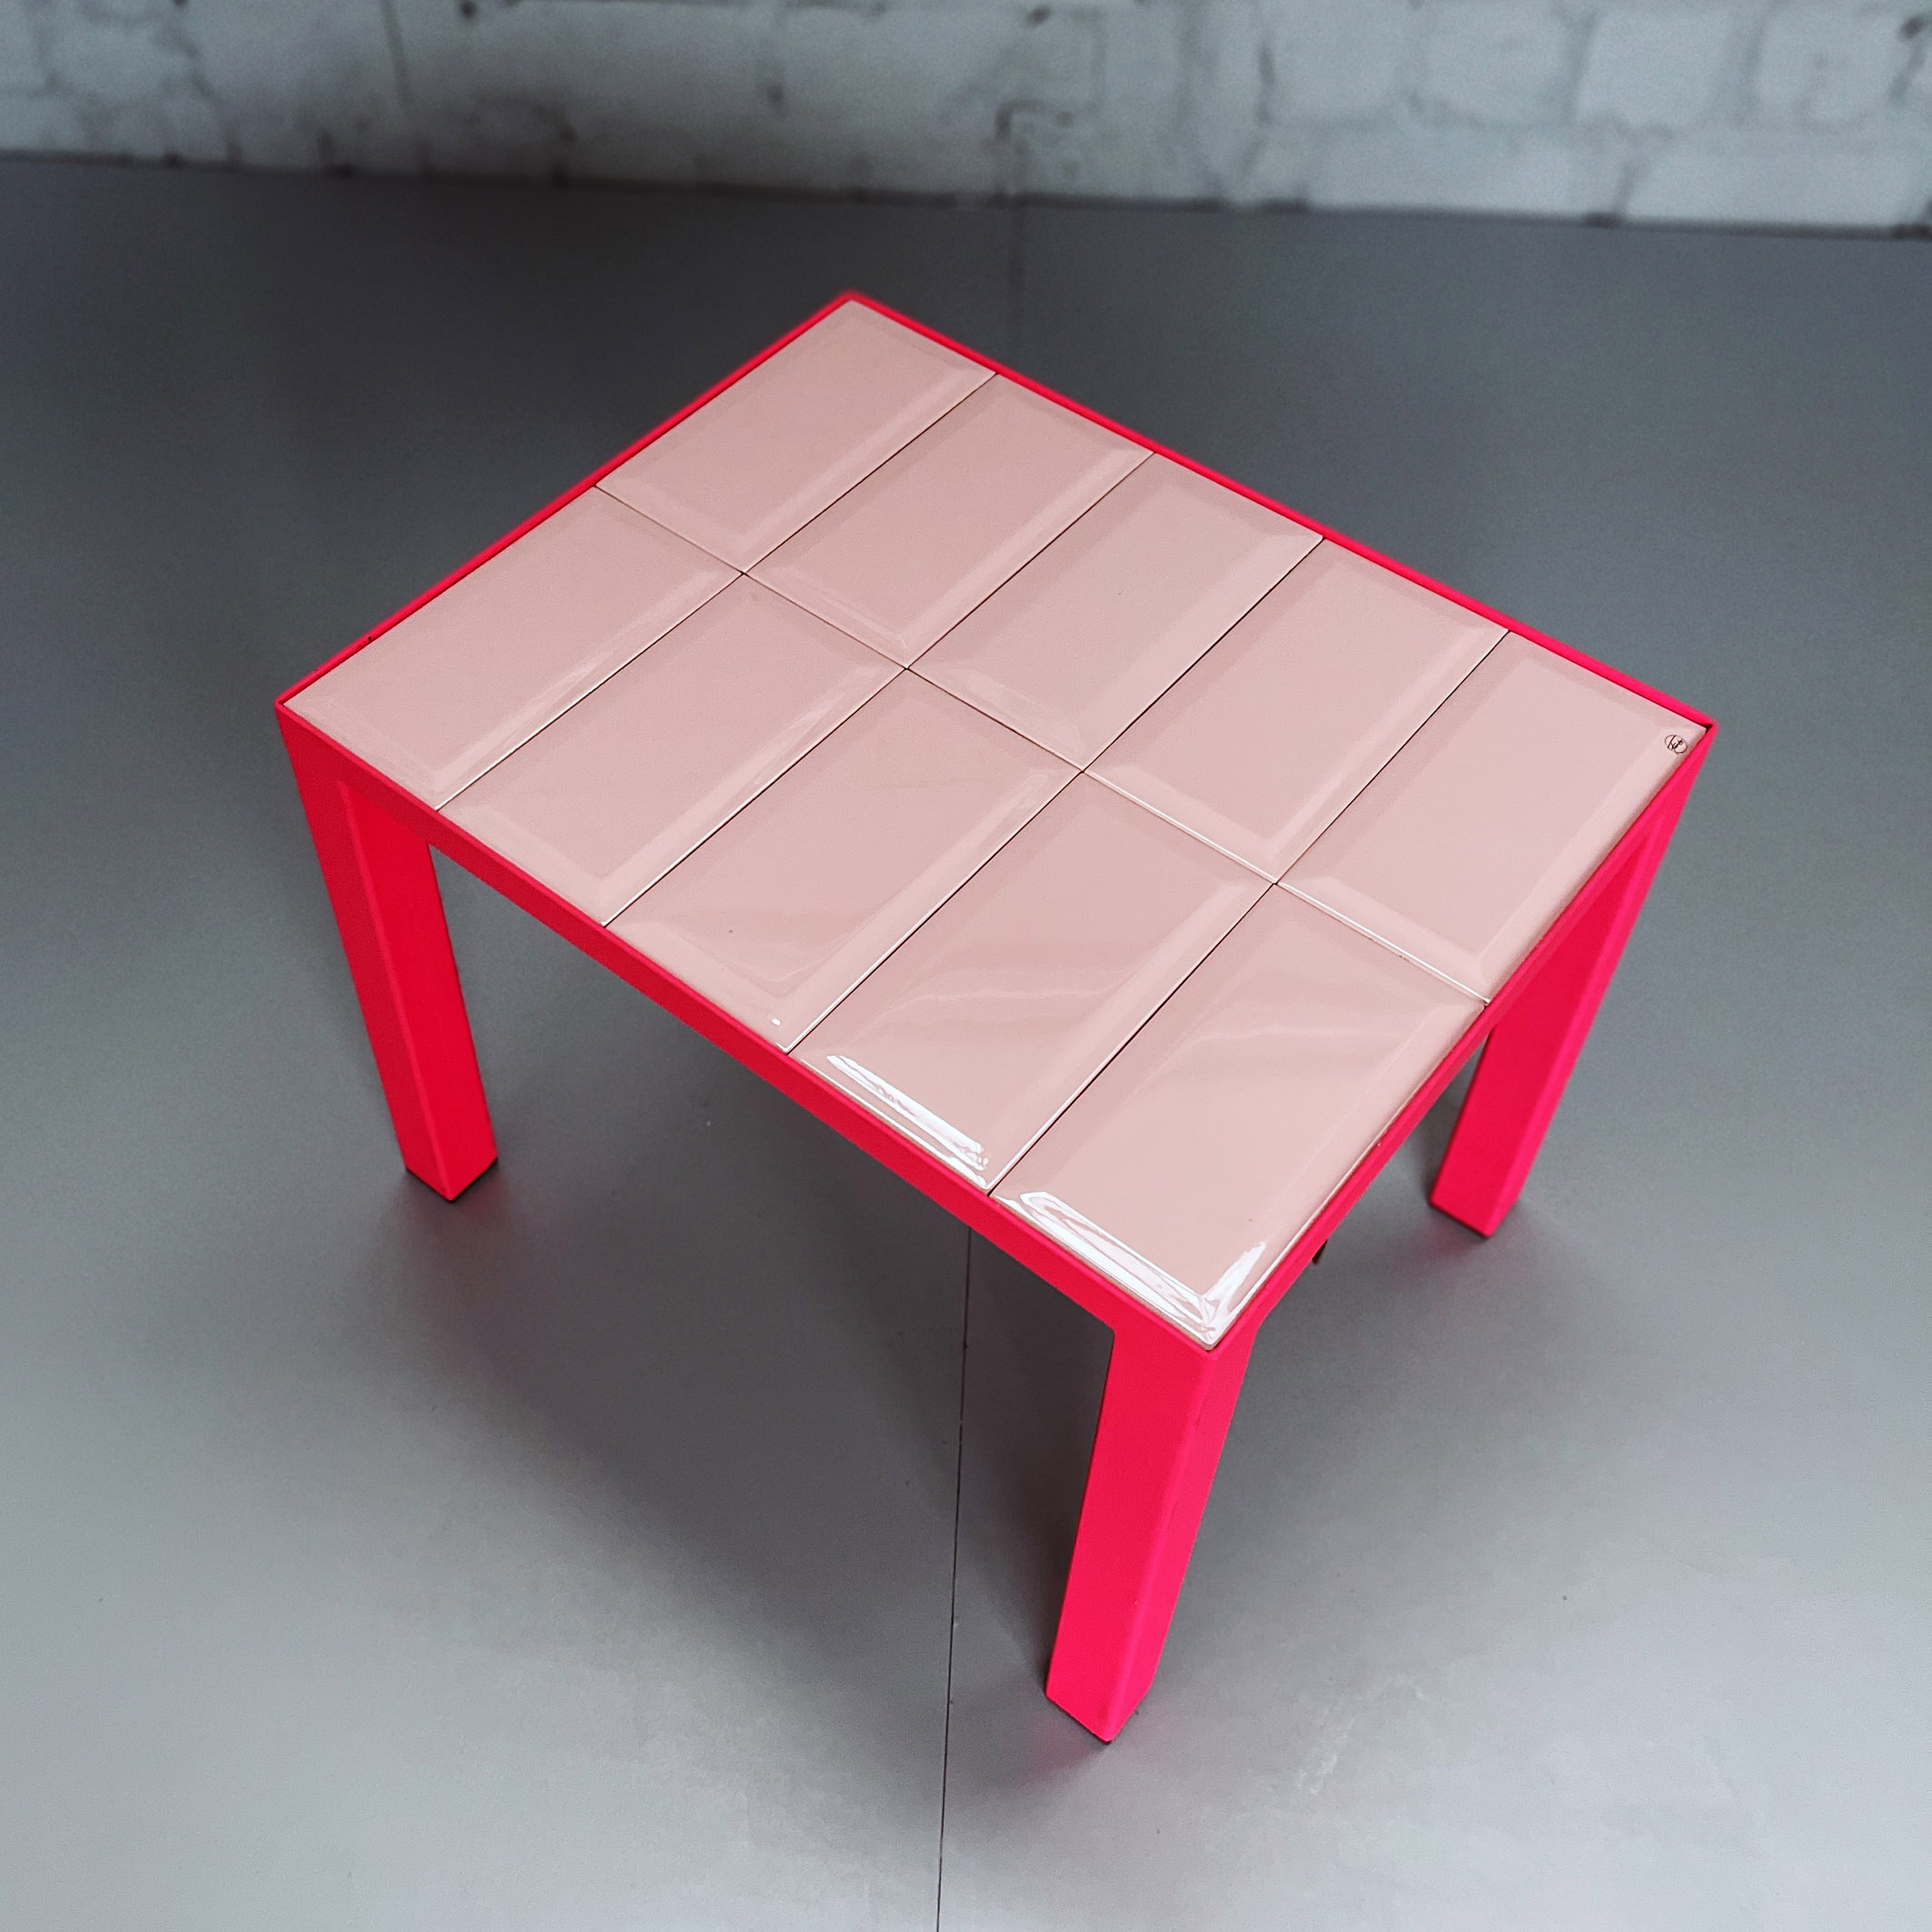 Fliesentisch_Pink_1_Shop